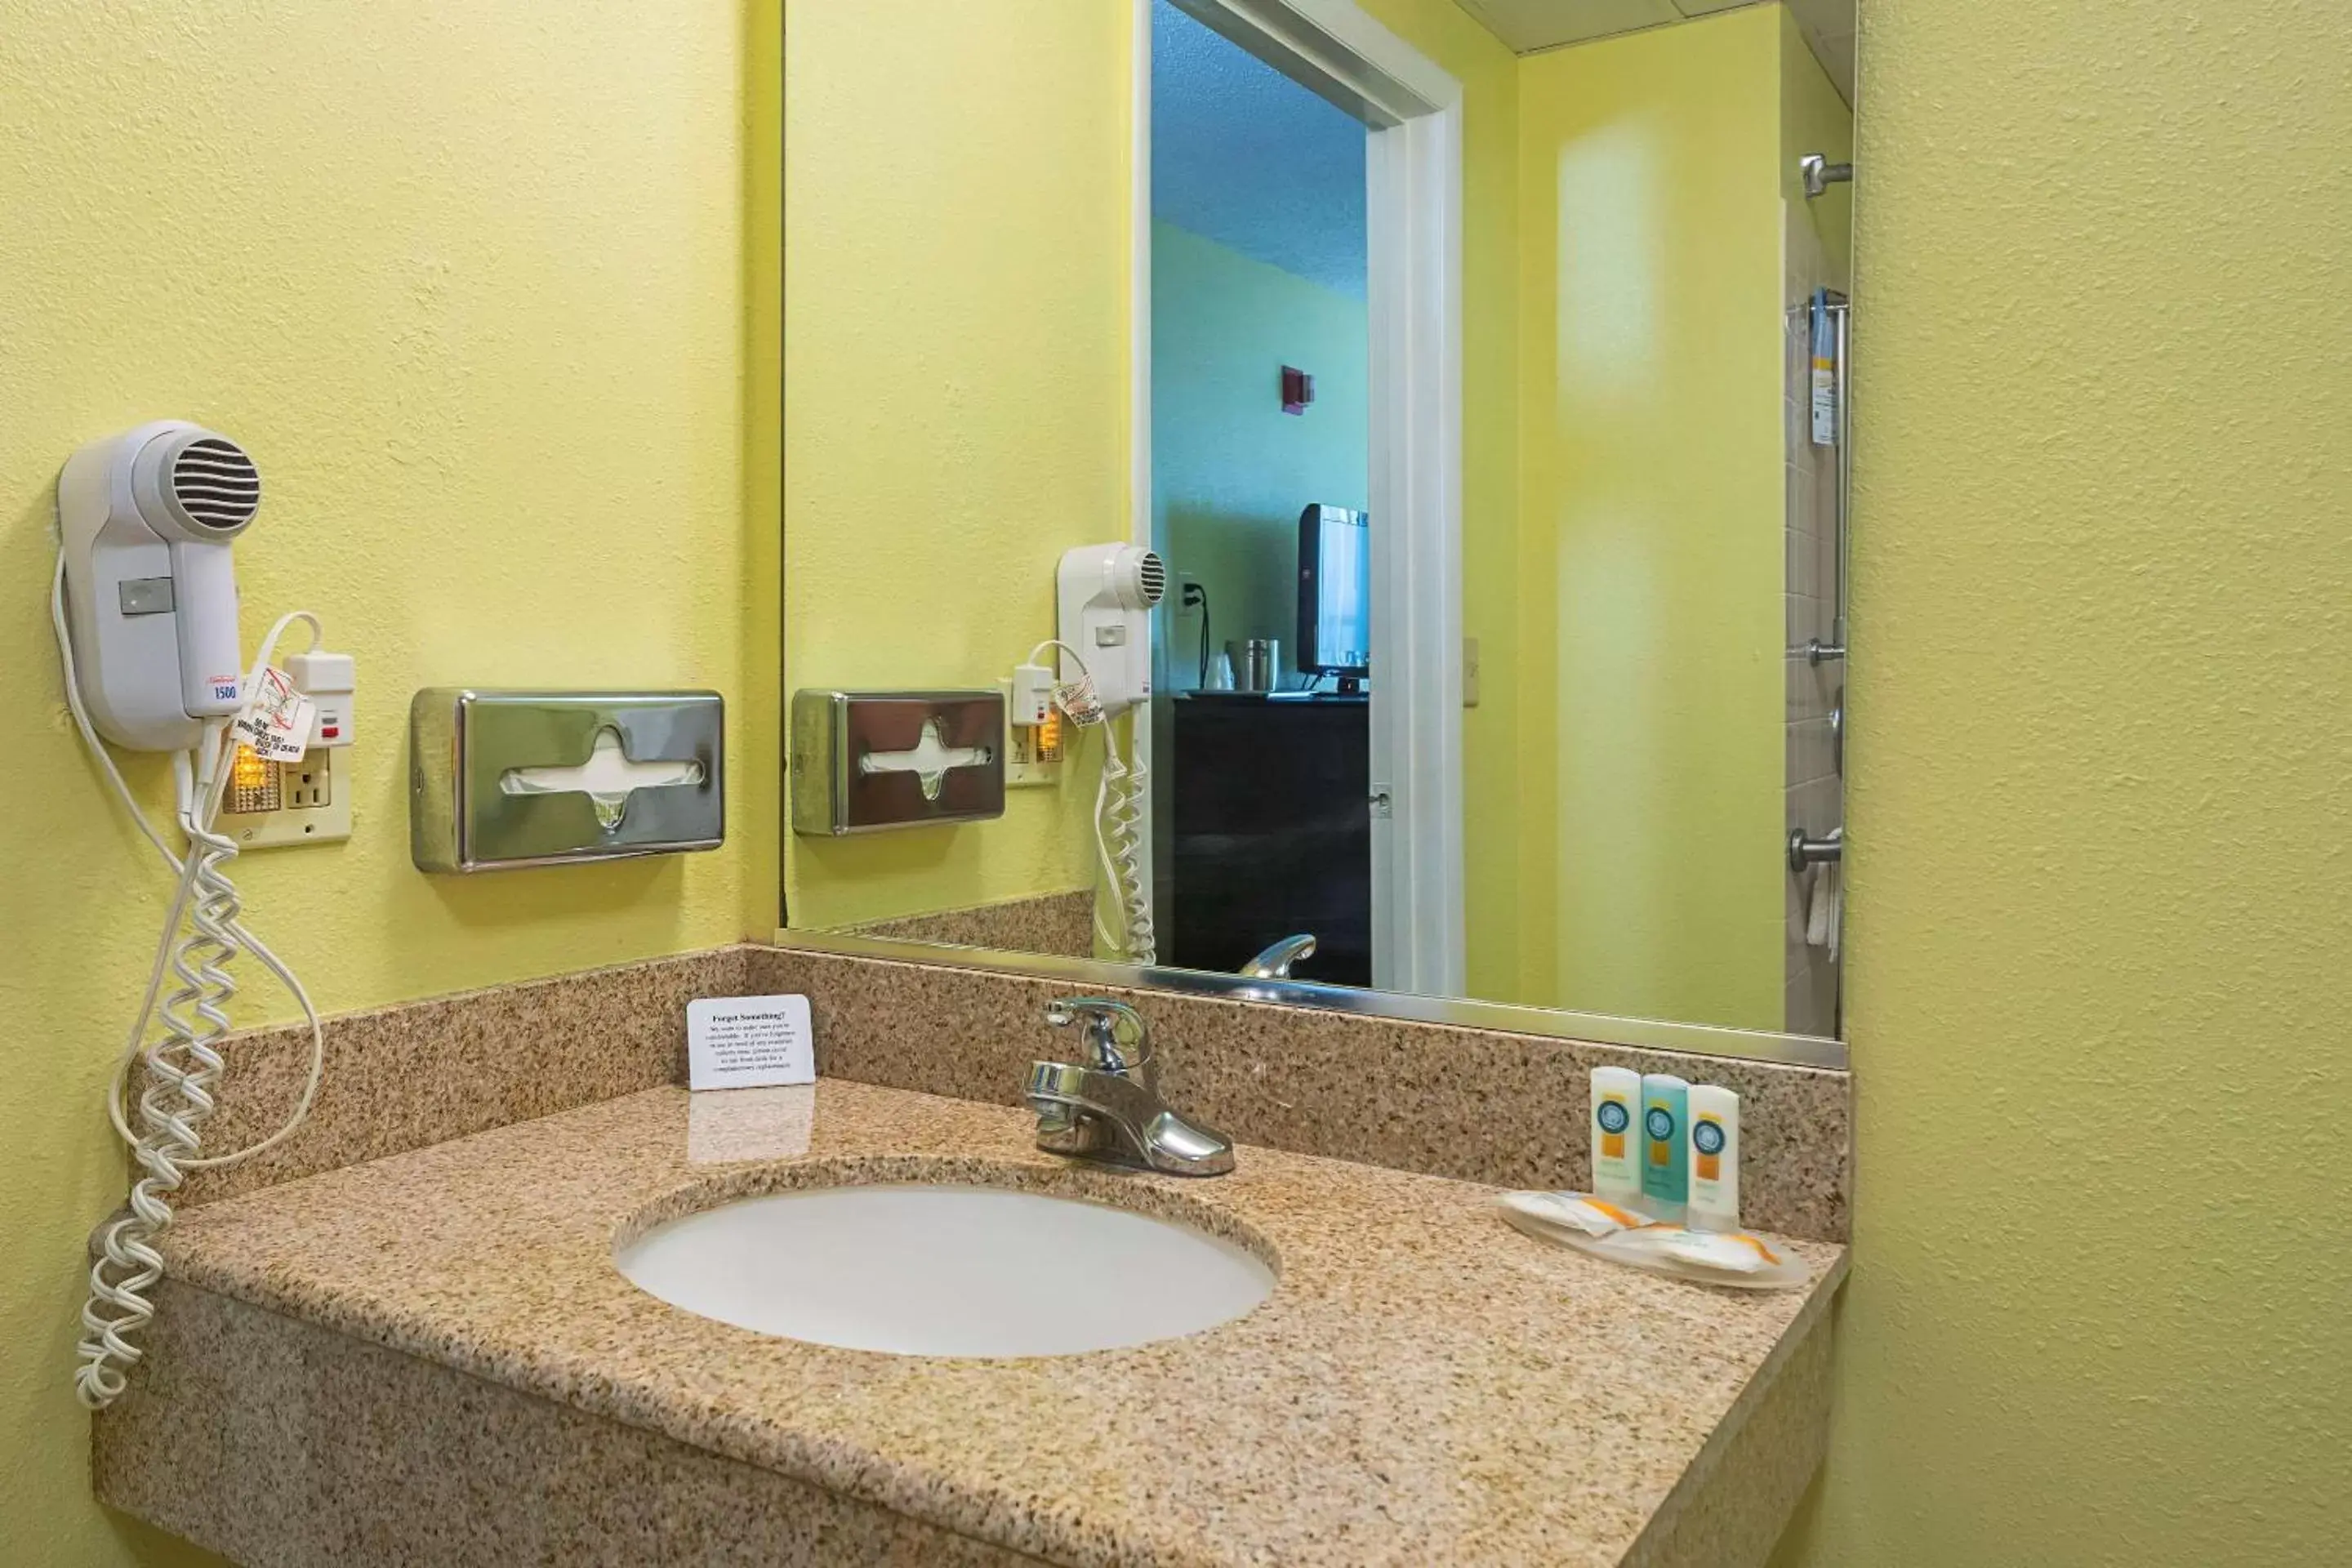 Bedroom, Bathroom in Quality Inn Washington